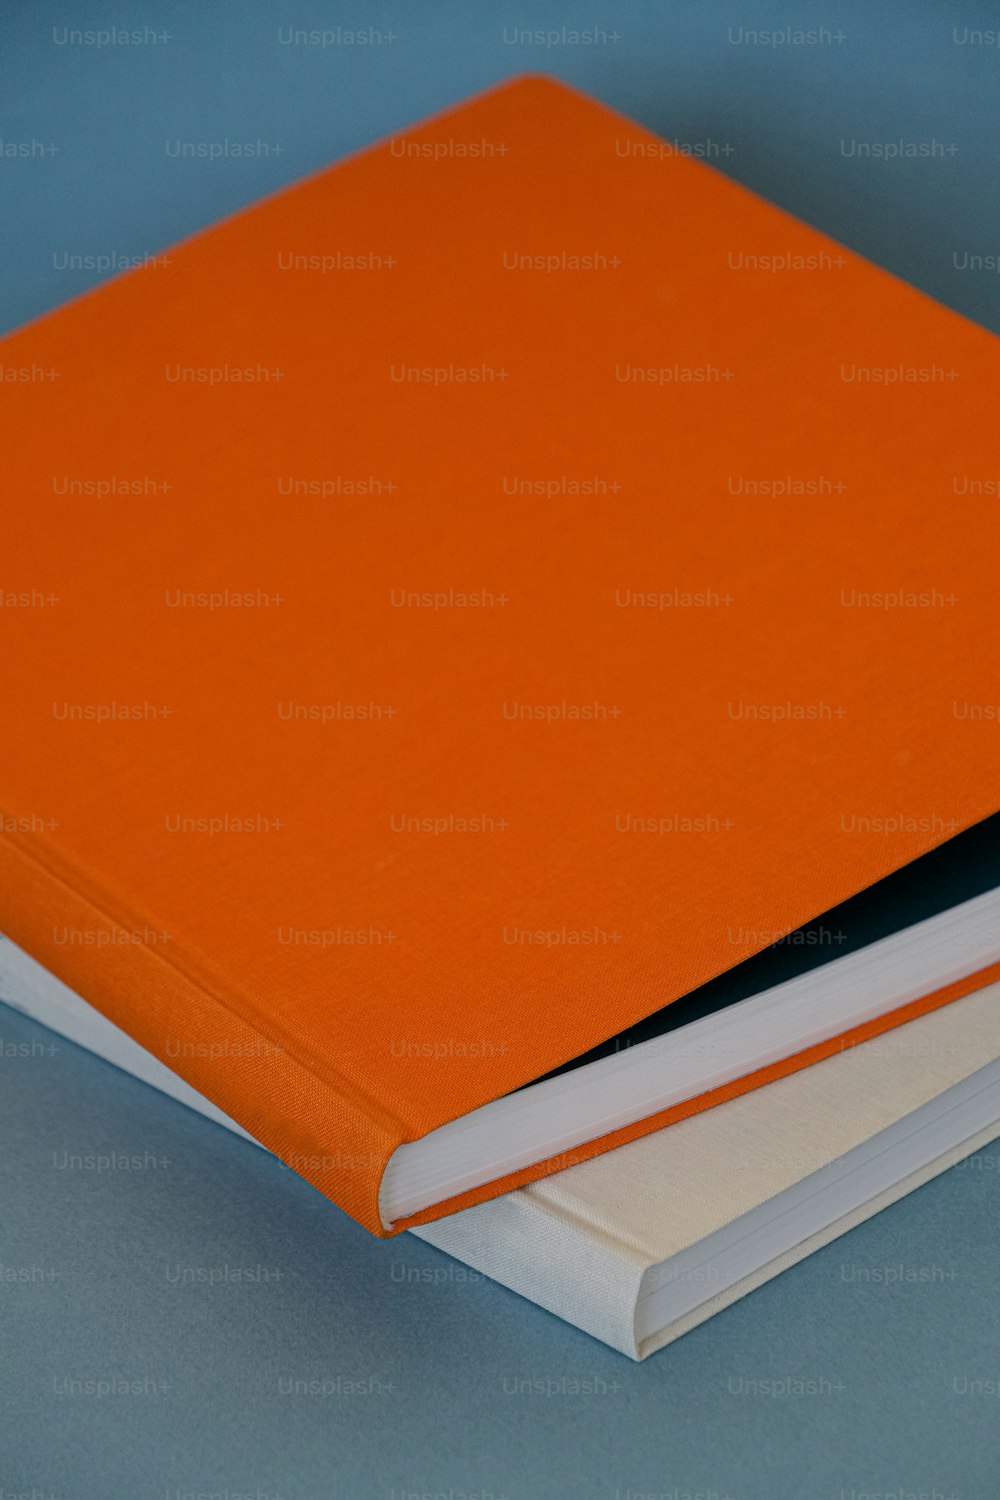 Un livre orange posé sur une table bleue